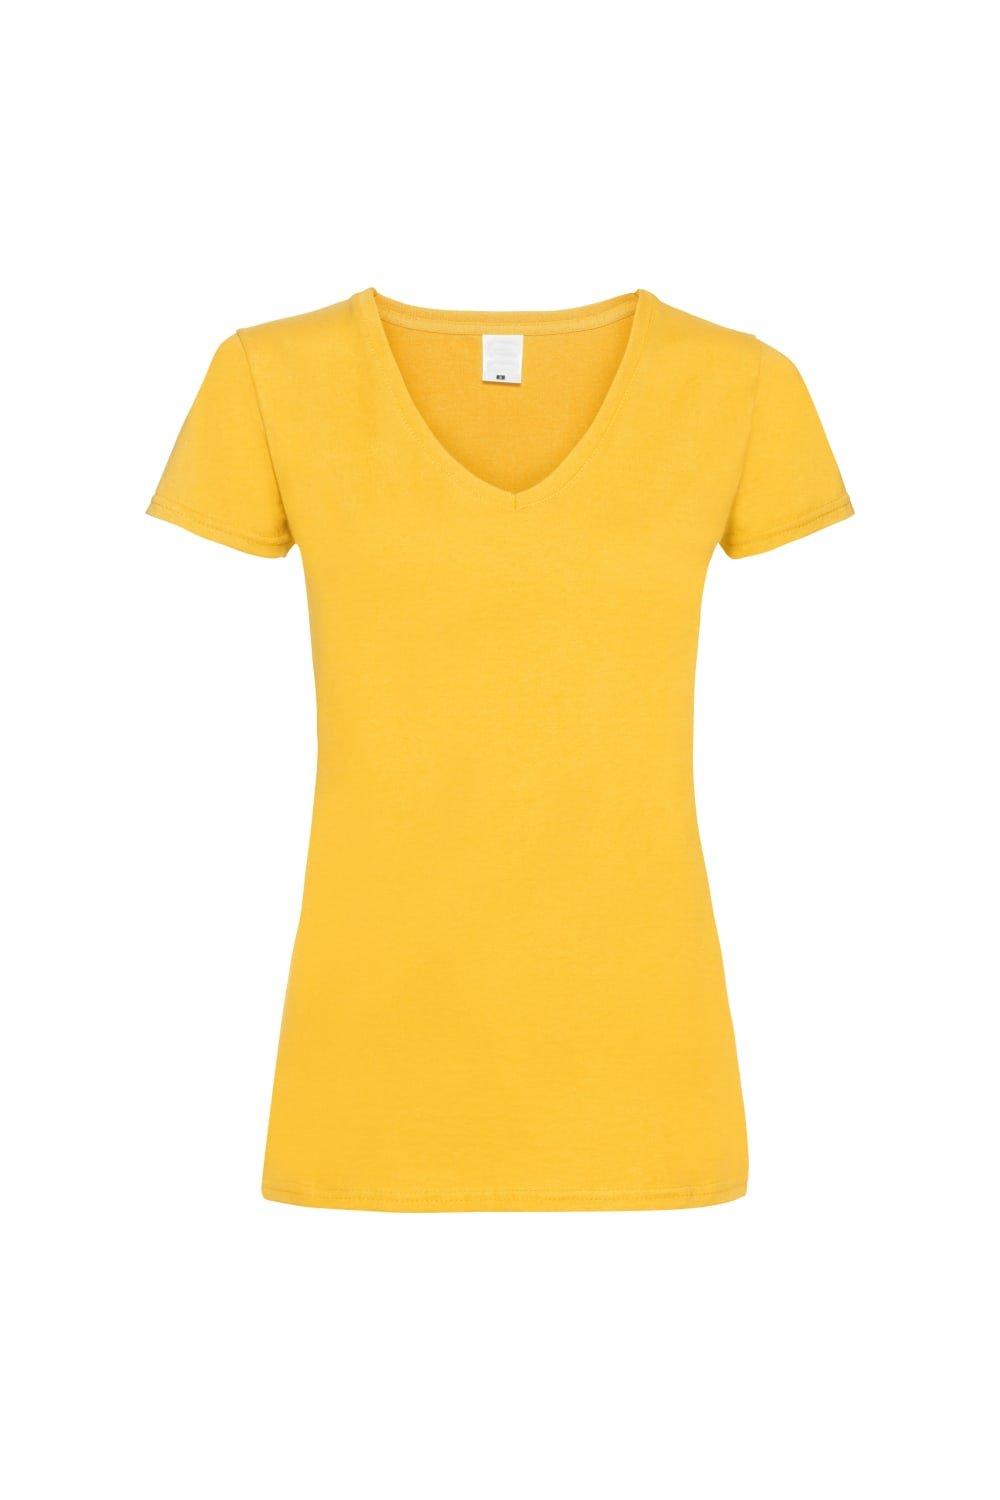 Повседневная футболка Value с V-образным вырезом и короткими рукавами Universal Textiles, золото футболка женская mia серый меланж размер xl